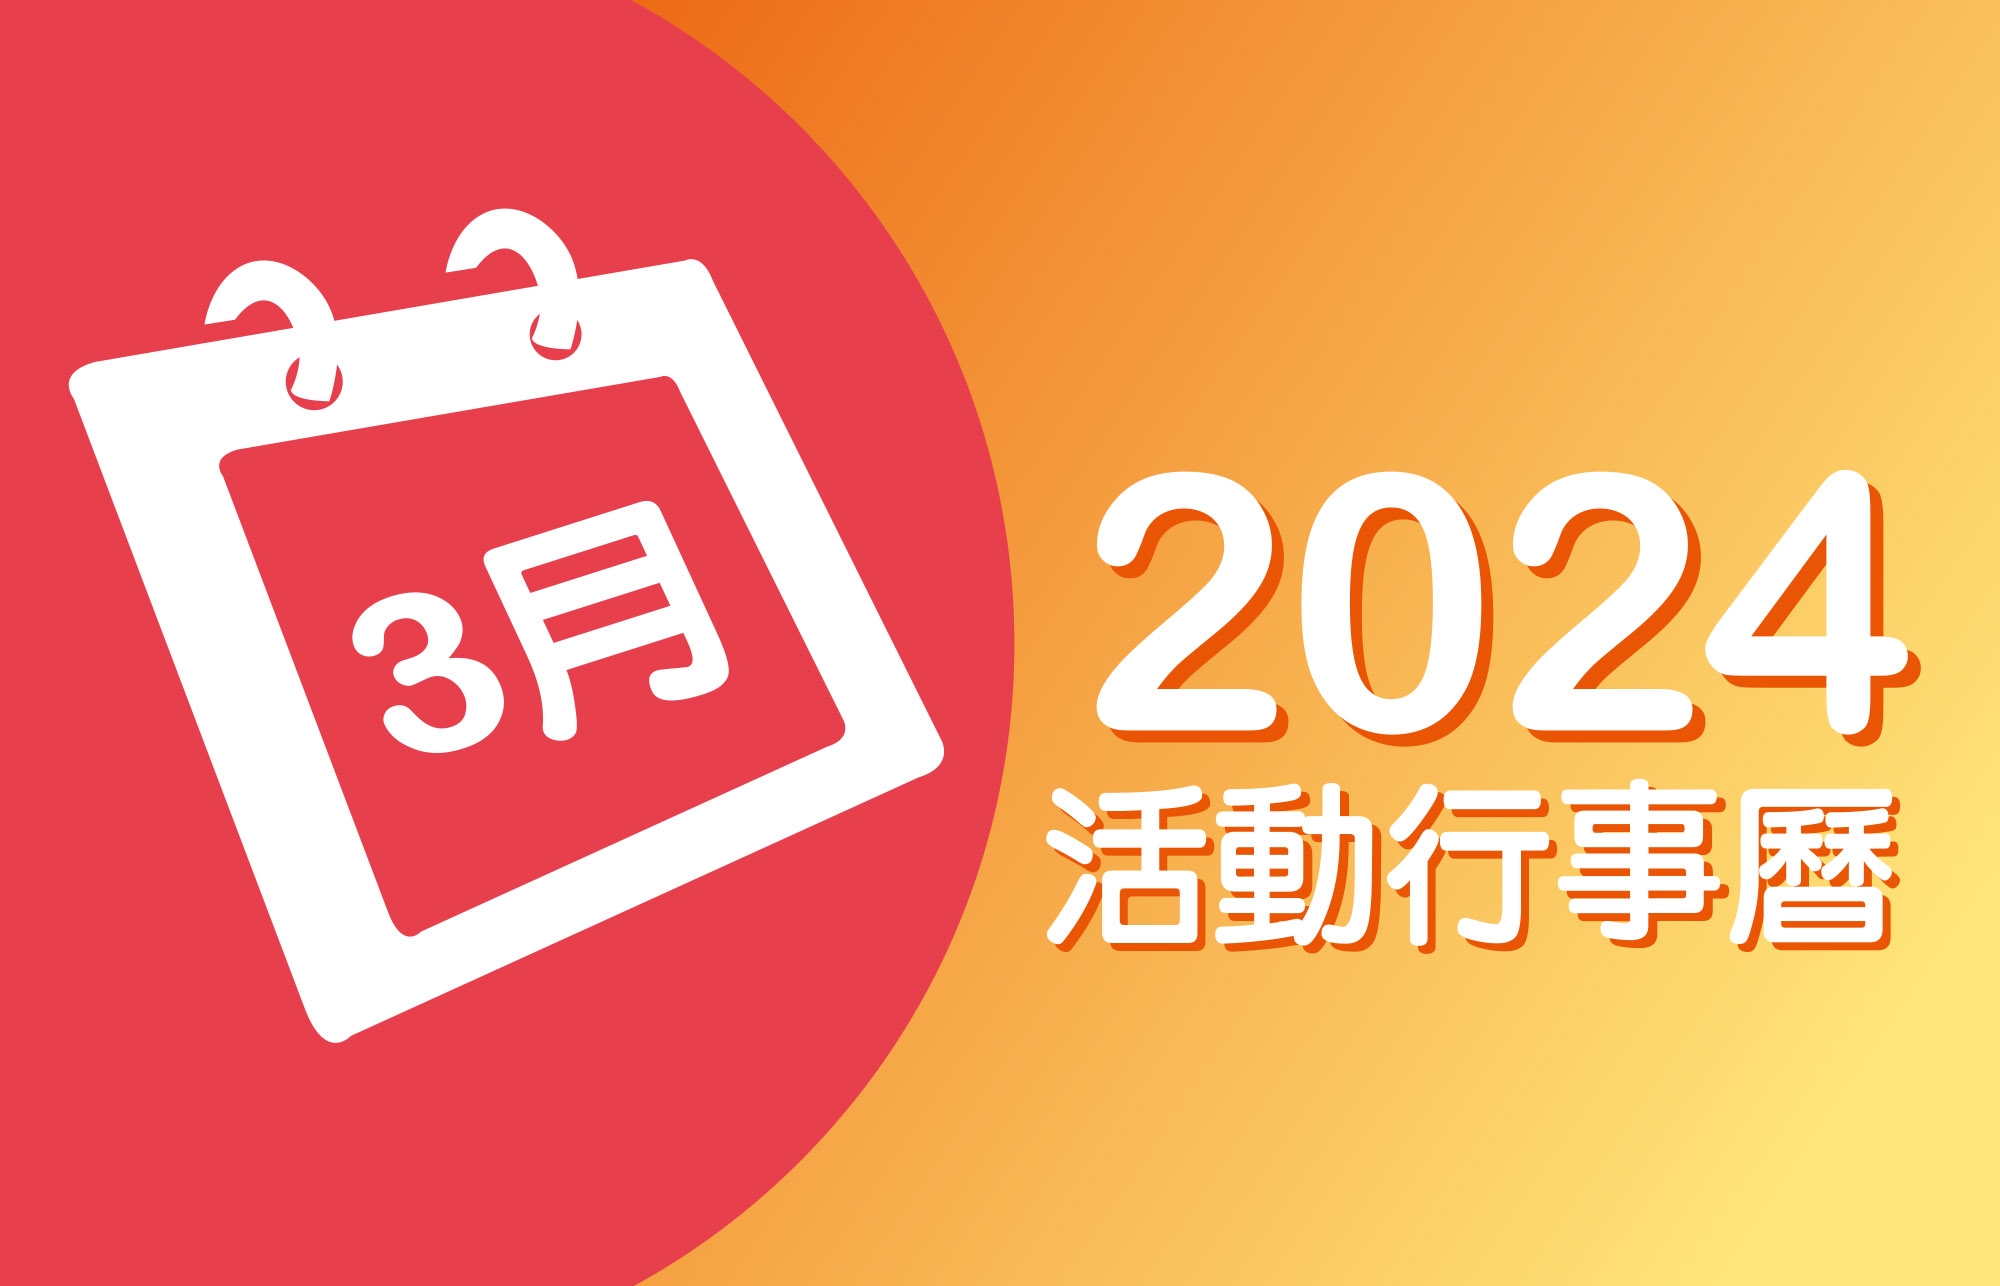 2024年3月 分院/講堂/中心 活動行事曆